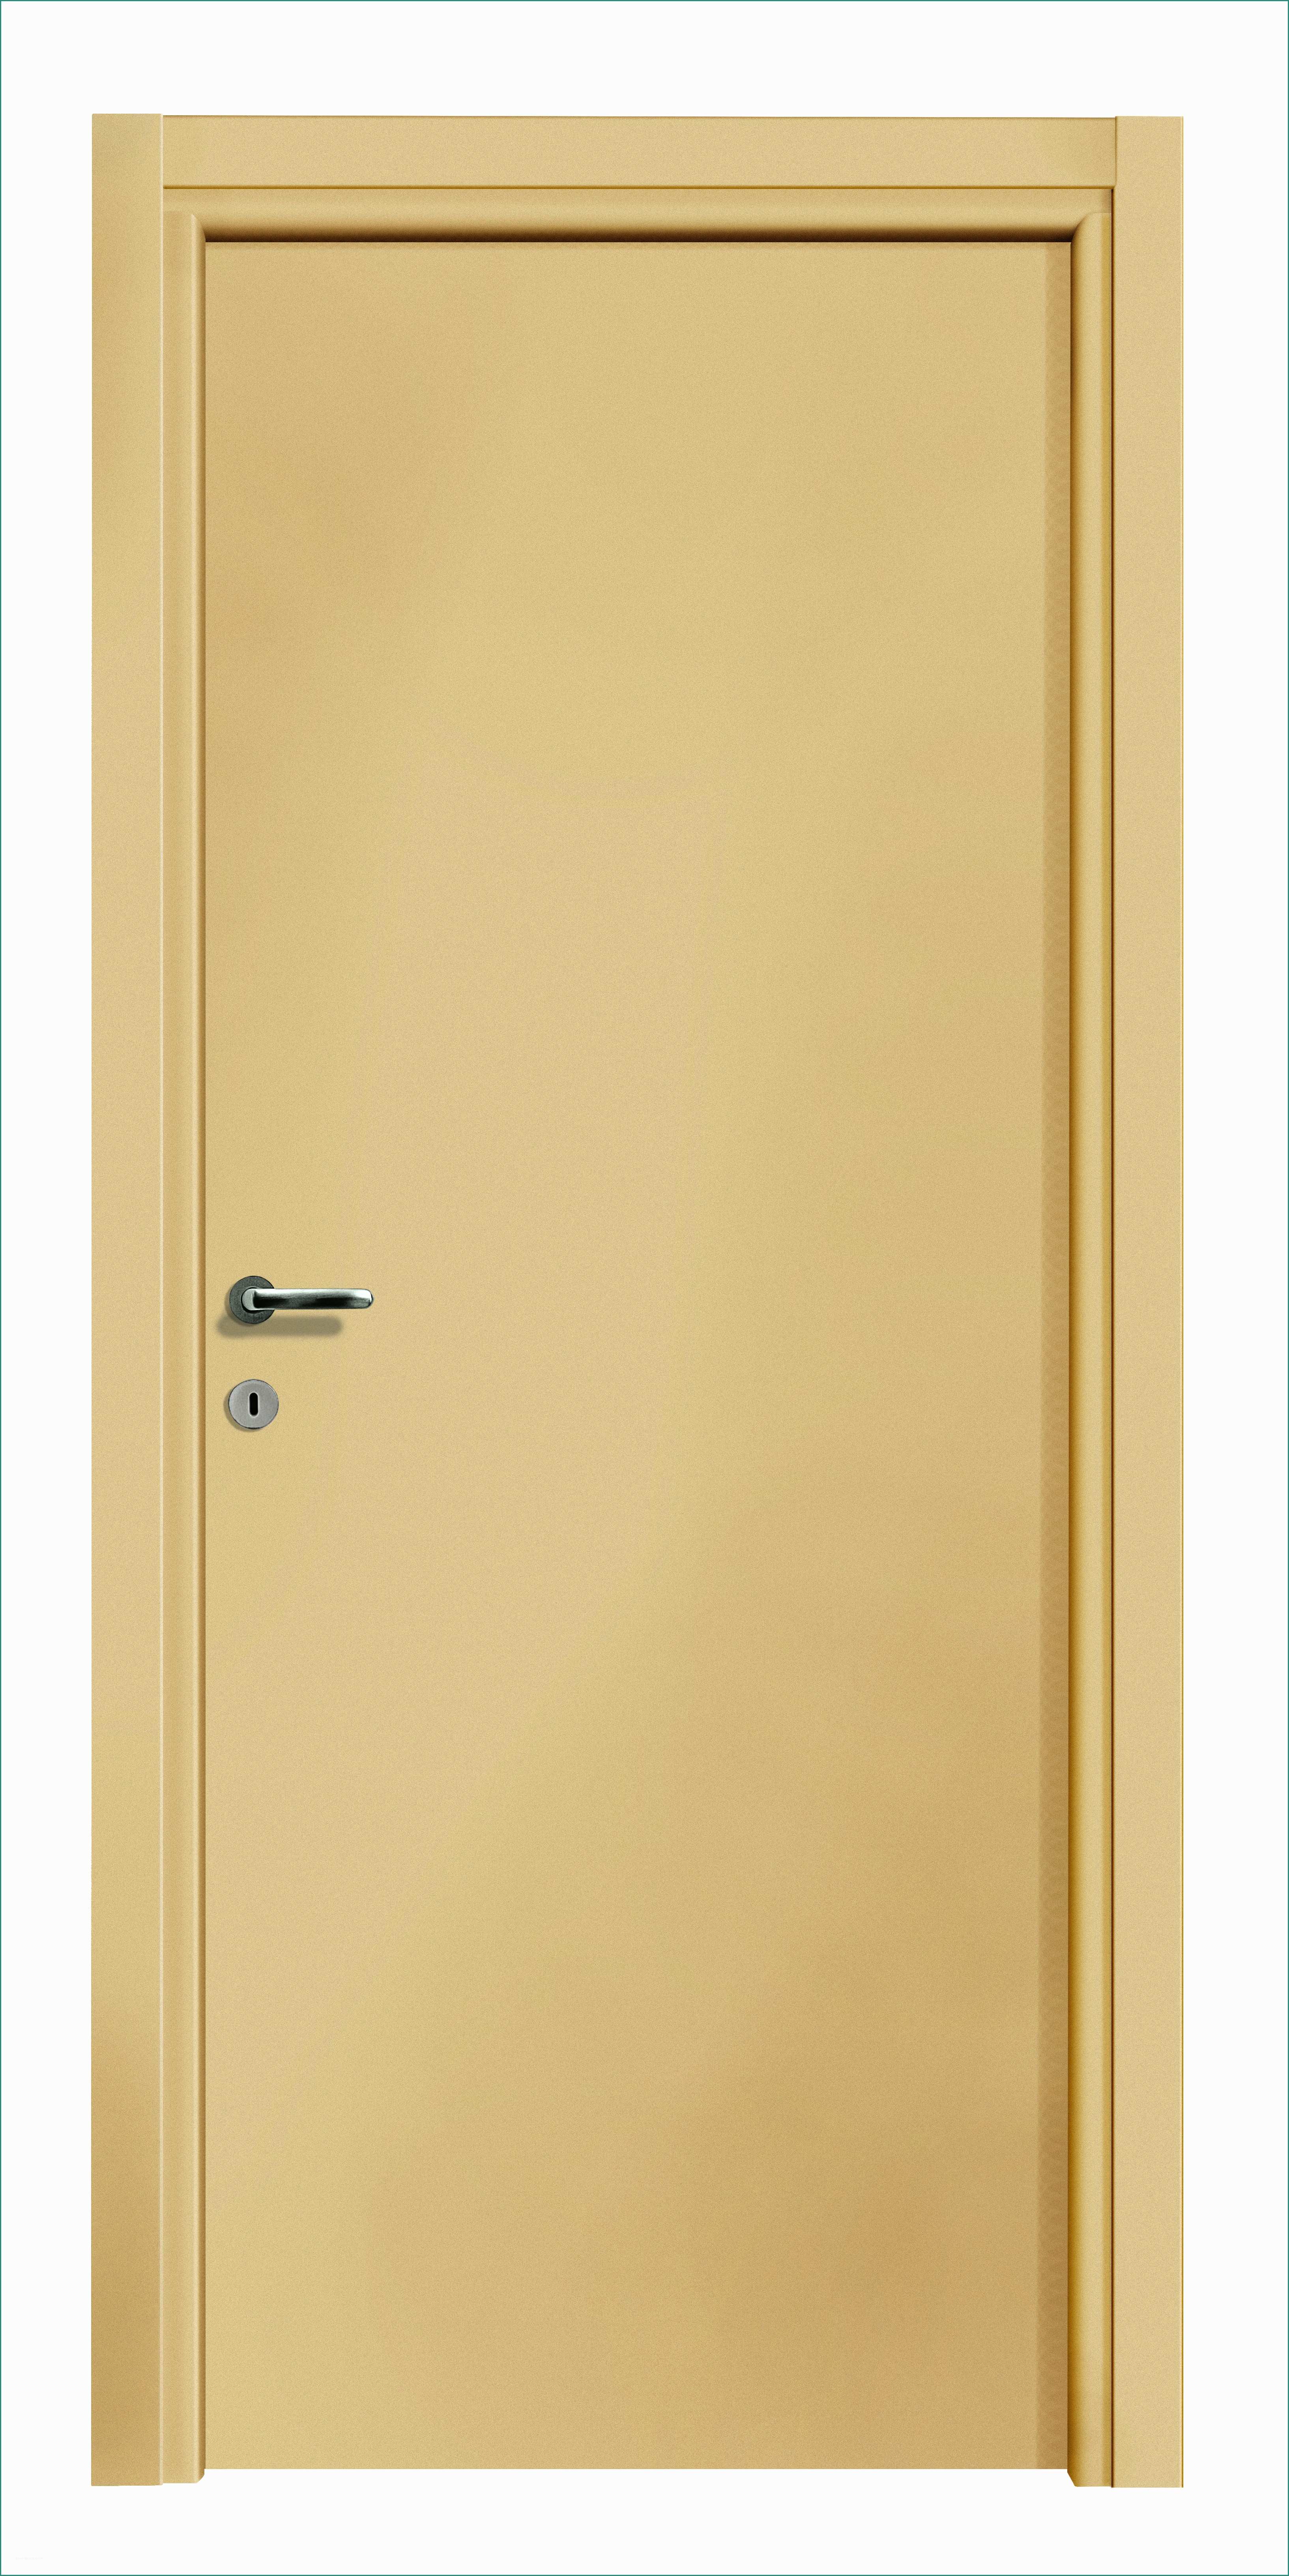 Porta Finestra Bricoman E Porte Di Design Per Interni Cheap Maniglie Porte Interne Ikea Per